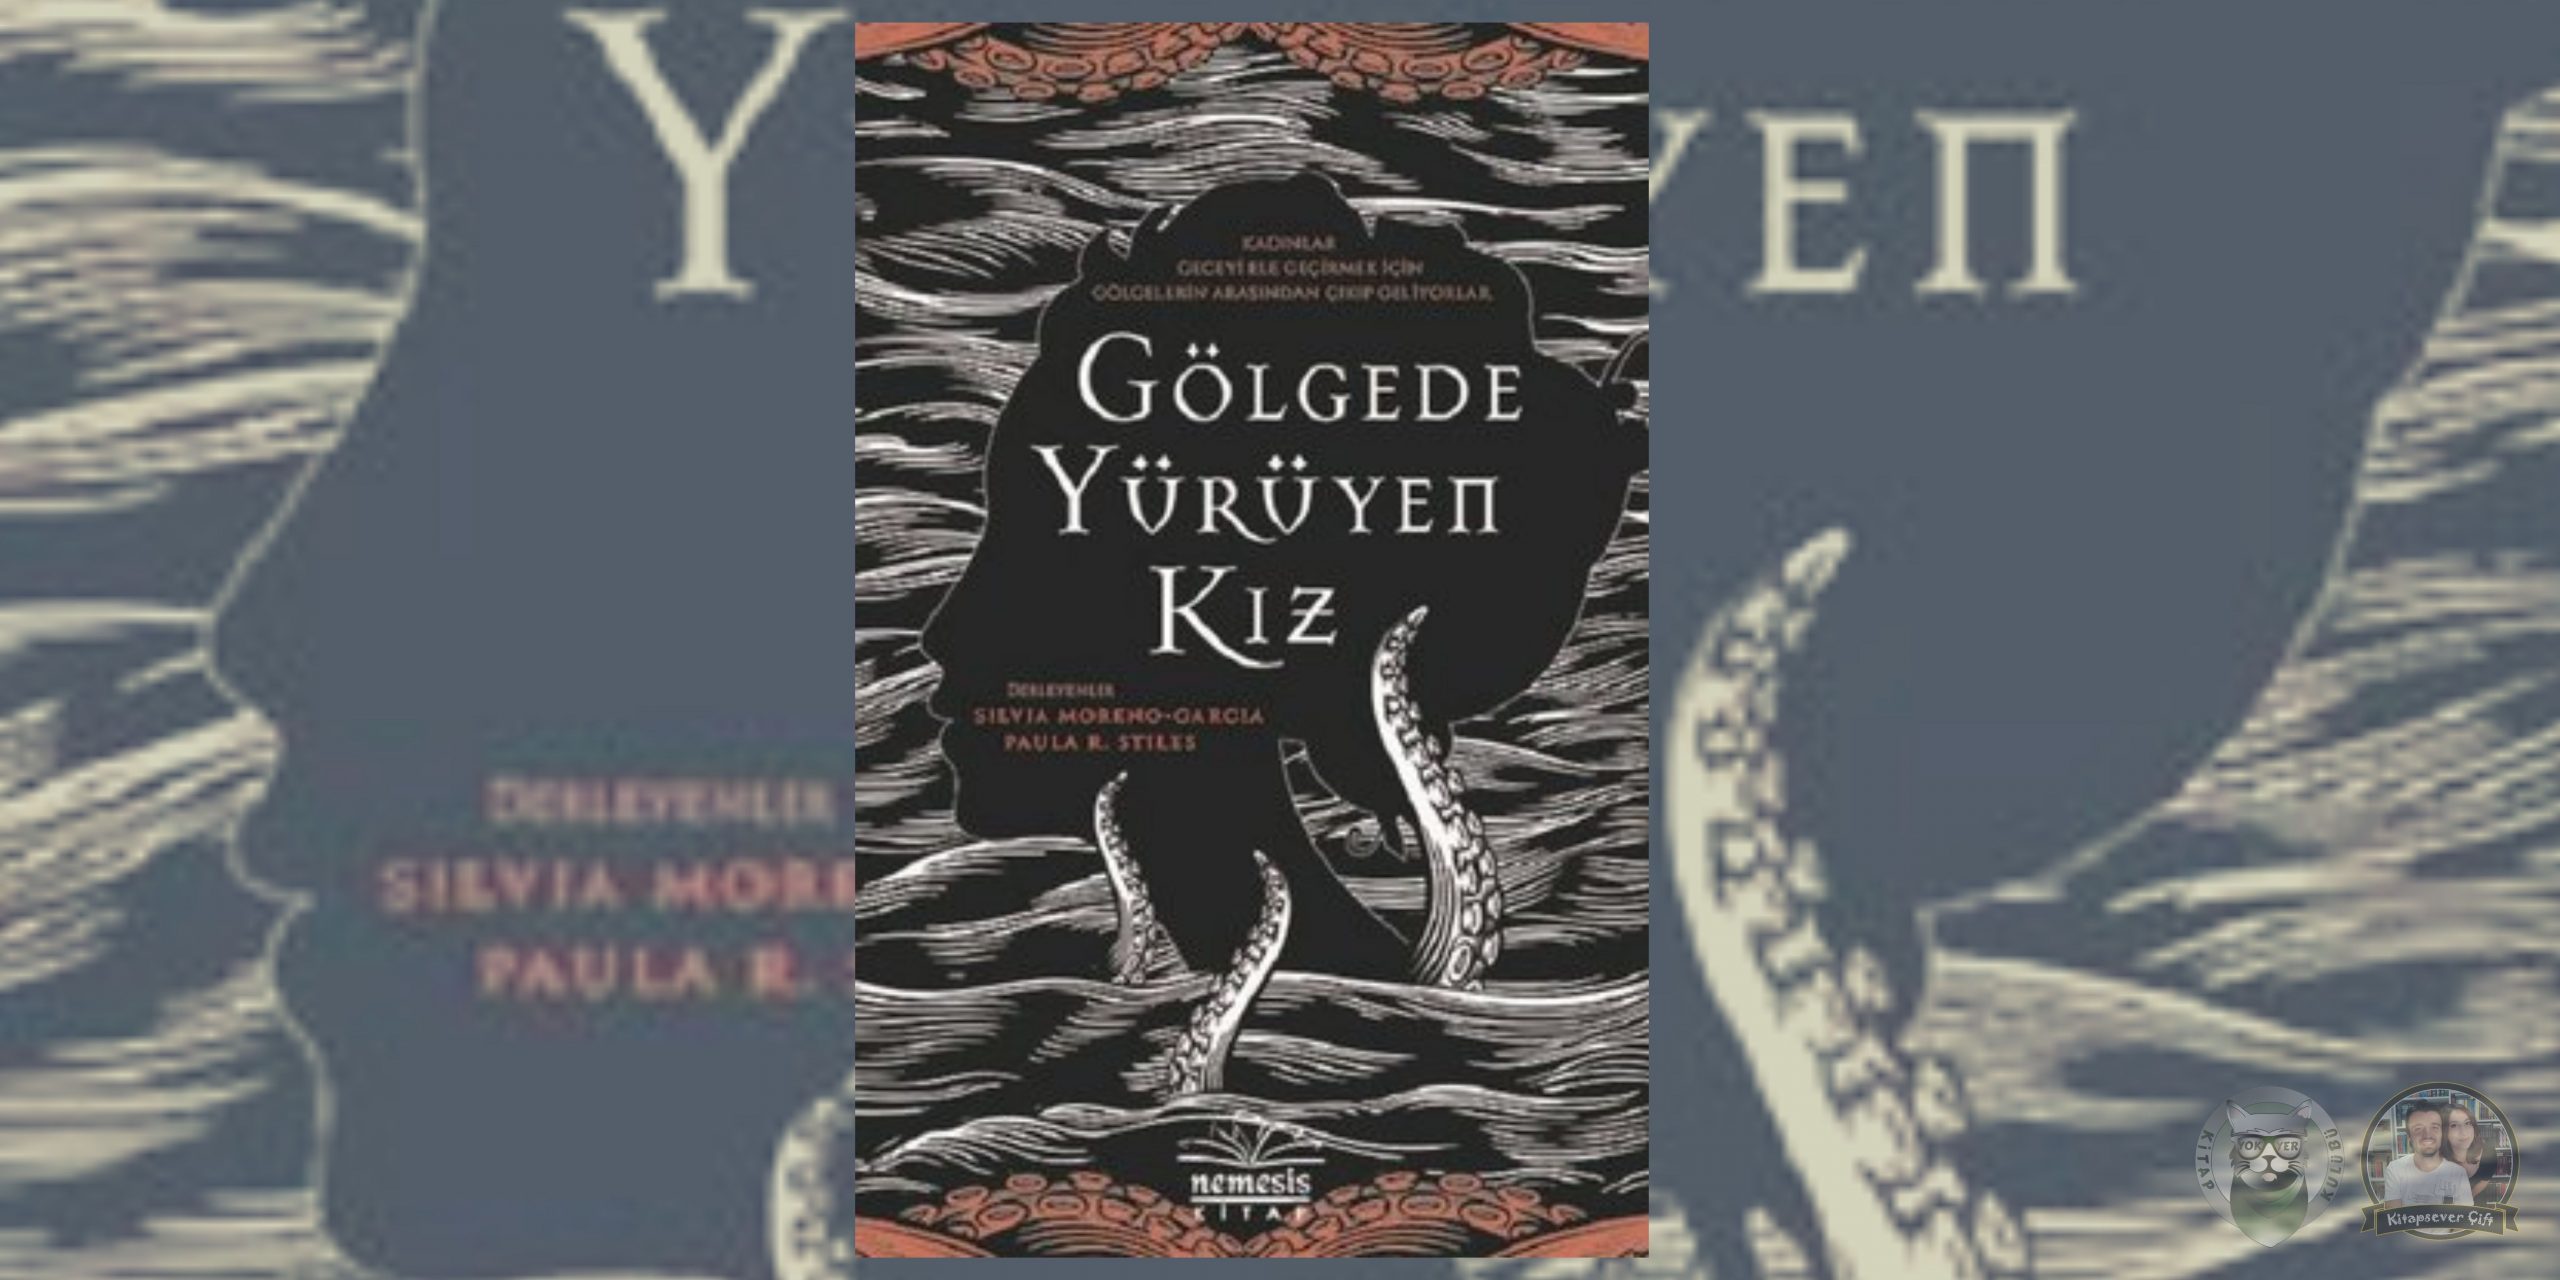 20 atmosferik gotik roman 14 – golgede yuruyen kiz scaled